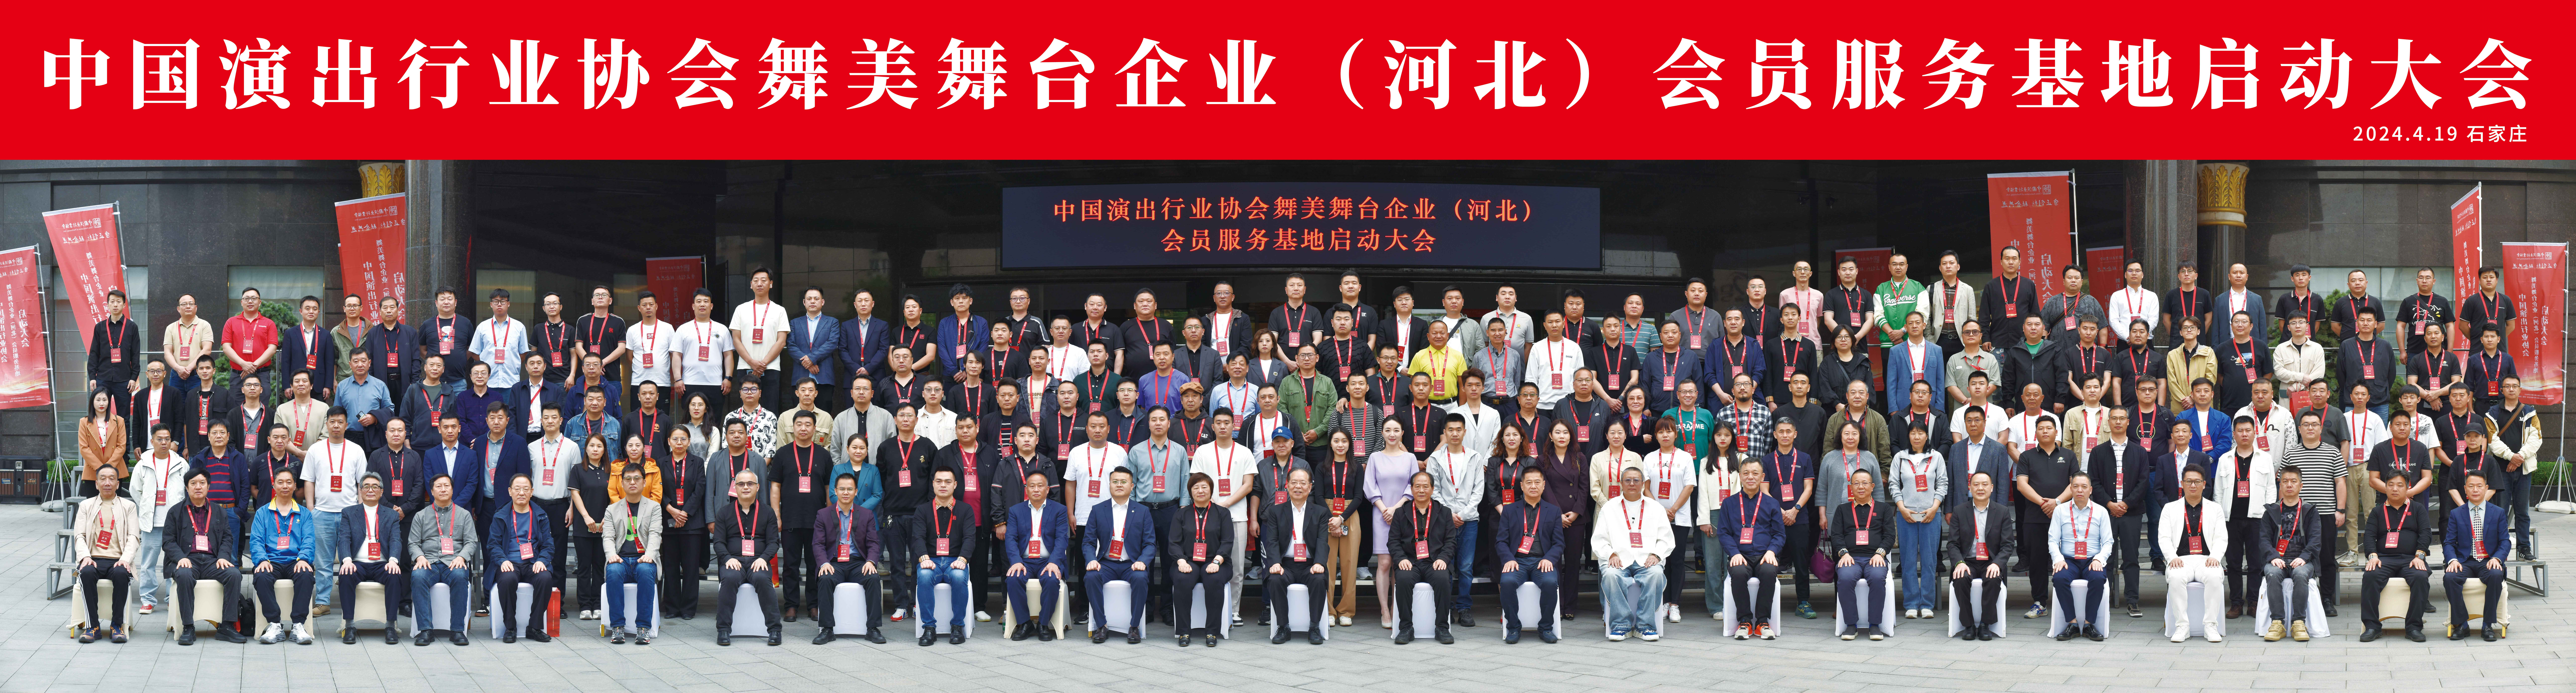 中国演出行业协会会员启动大会